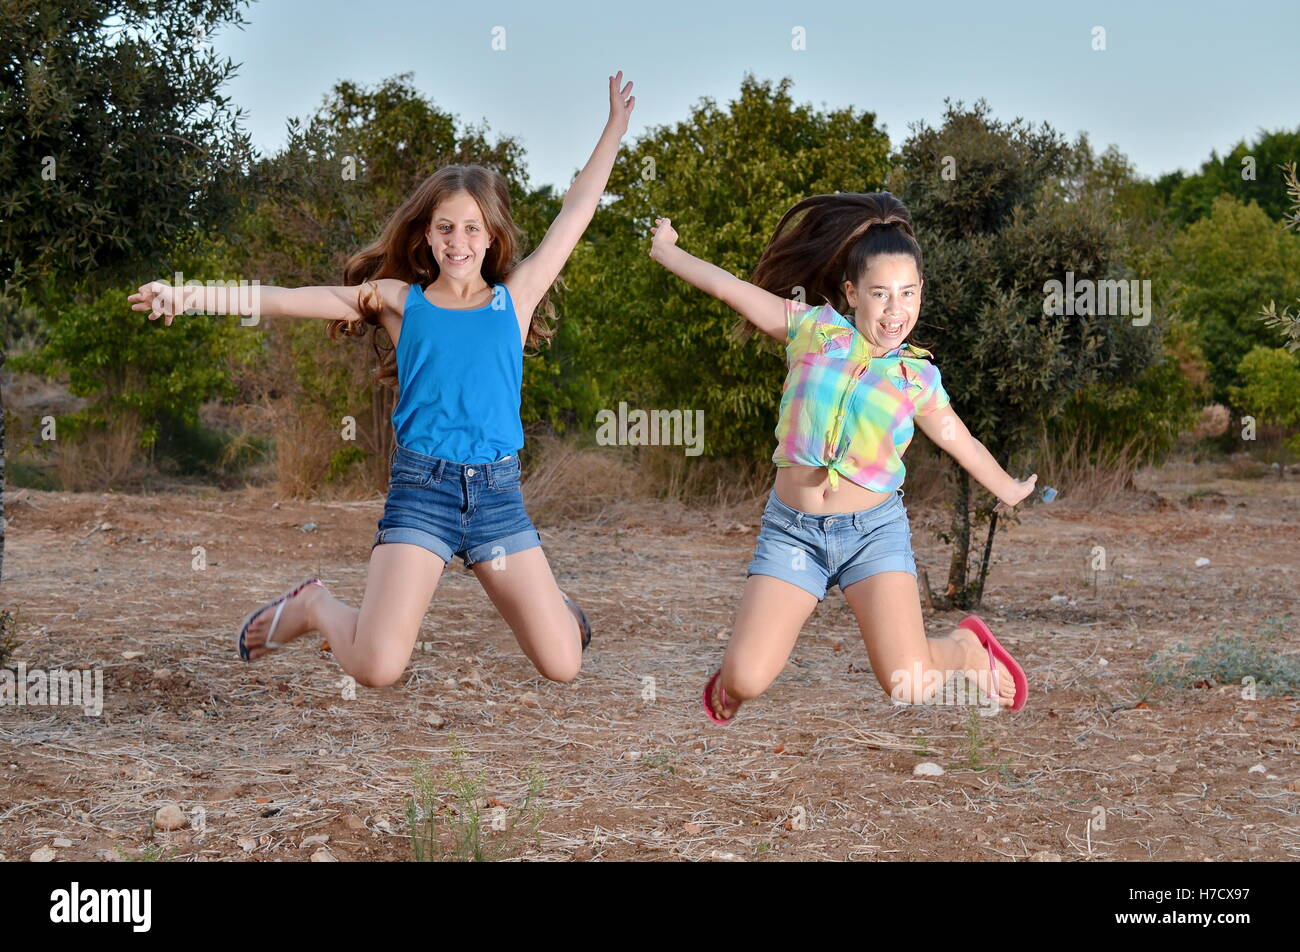 Migliori amici per sempre - due, 12 anni, ragazze adolescenti jumping congelati a metà in aria Foto Stock